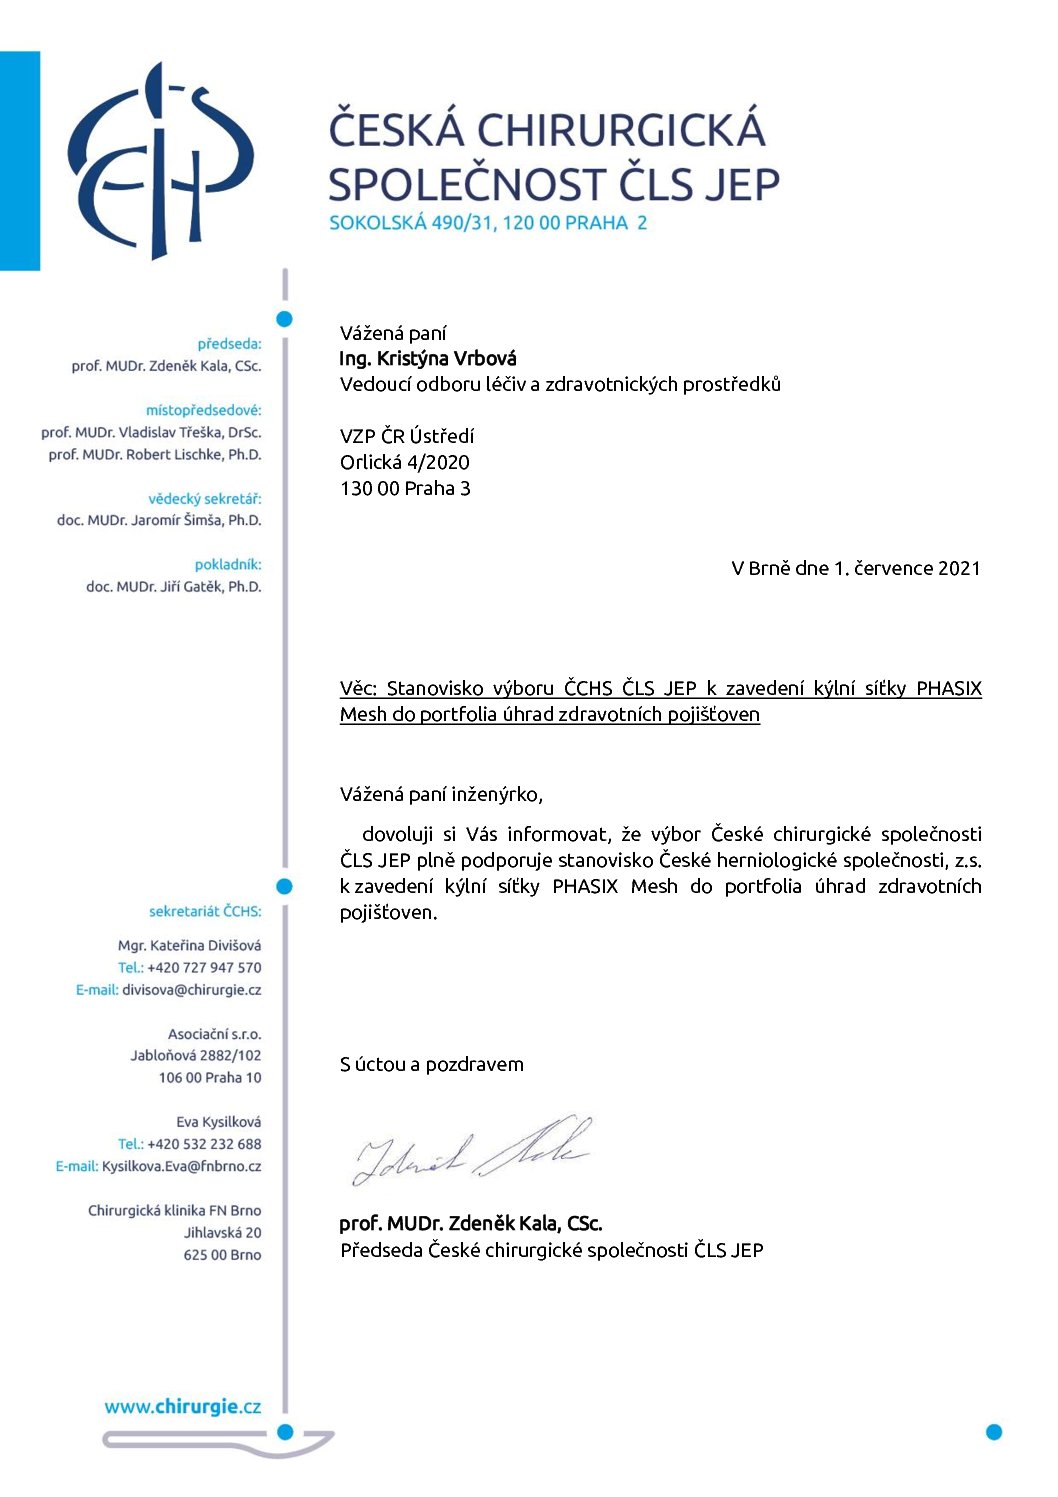 Stanovisko výboru ČCHS ČLS JEP k zavedení kýlní síťky PHASIX Mesh do portfolia úhrad (1. 7. 2021)